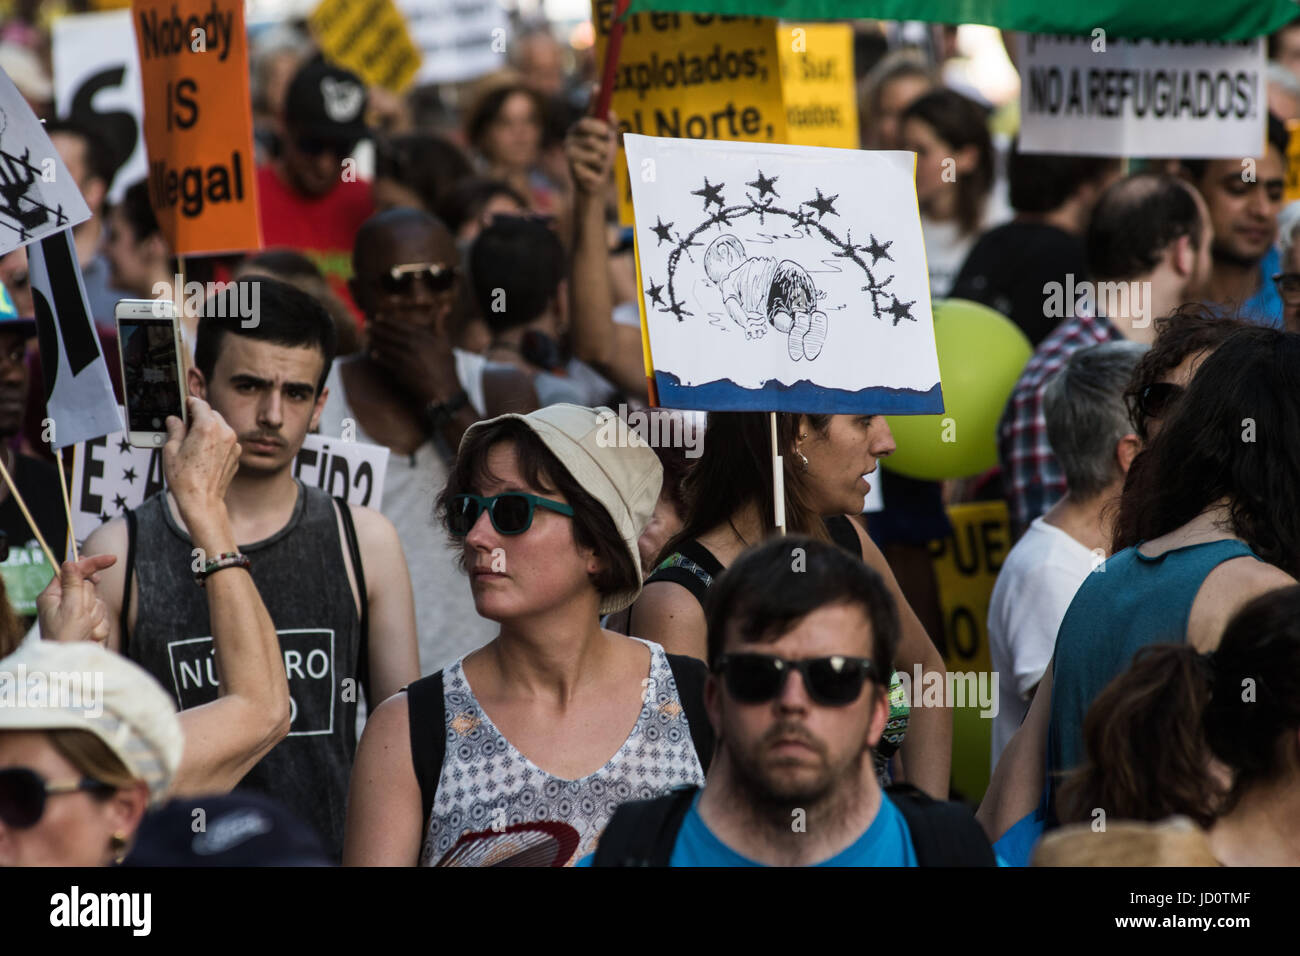 Madrid, Spanien. 17. Juni 2017. Menschen fordern, Flüchtlinge bei einer Demonstration gegen Einwanderungspolitik begrüßen zu dürfen. Bildnachweis: Marcos del Mazo/Alamy Live-Nachrichten Stockfoto